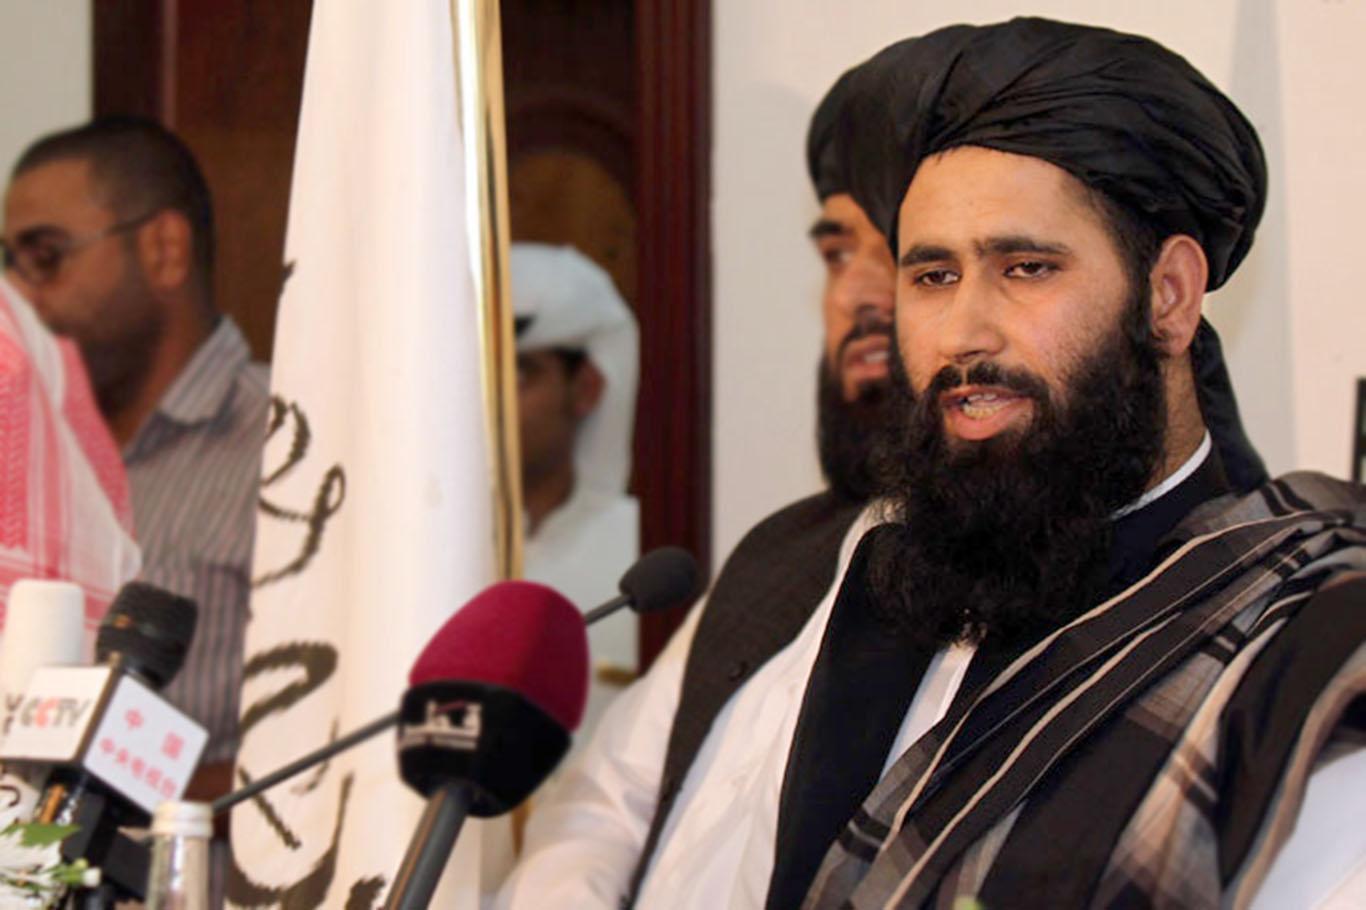 "Taliban'ın hedefi İslam ülkelerine karşı değil işgalcilere karşı savaşmaktır"